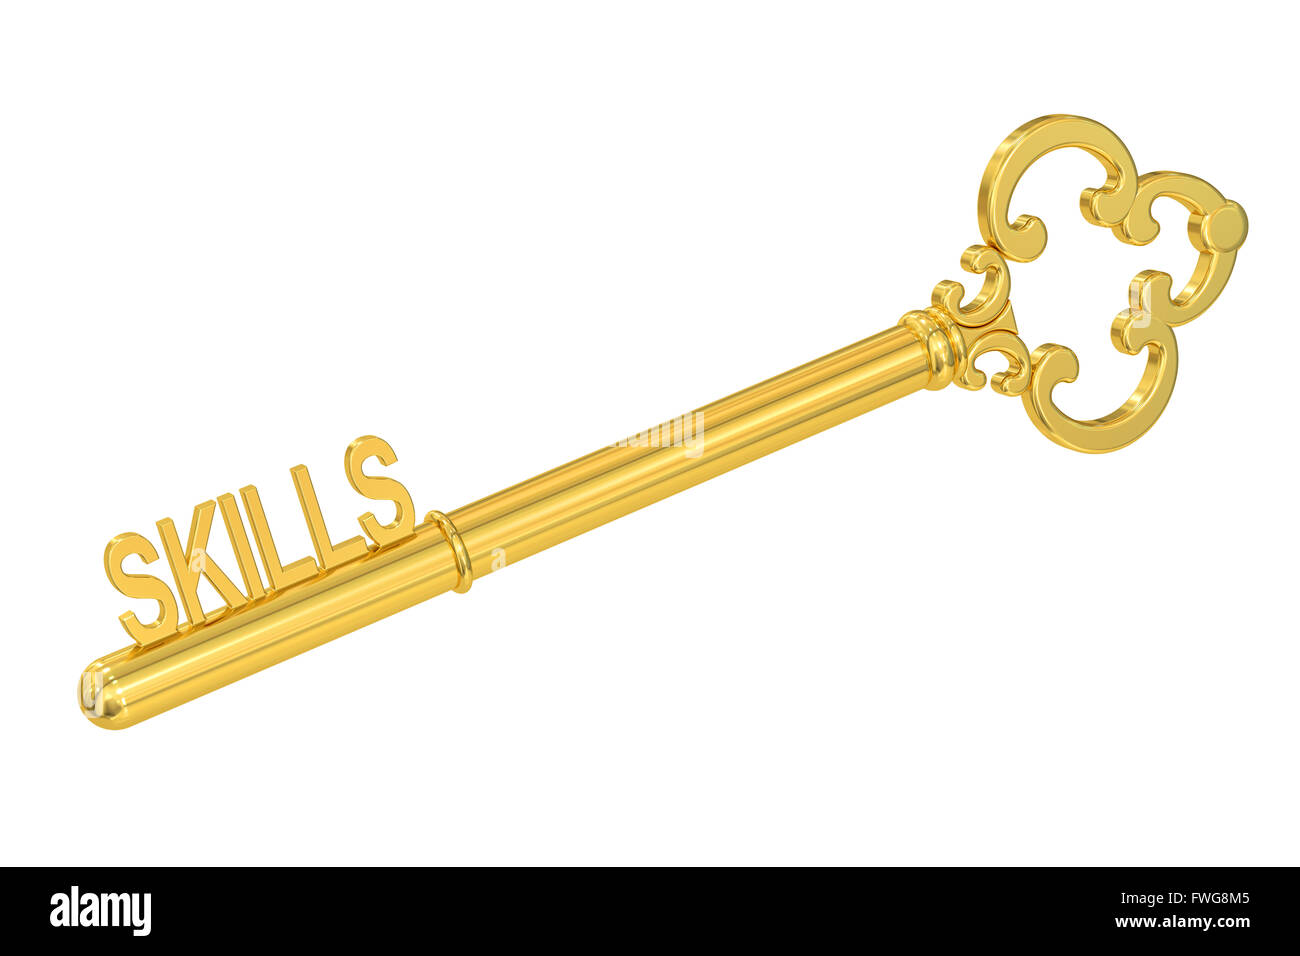 Fähigkeiten - goldene Schlüssel, 3D-Rendering isoliert auf weißem Hintergrund Stockfoto